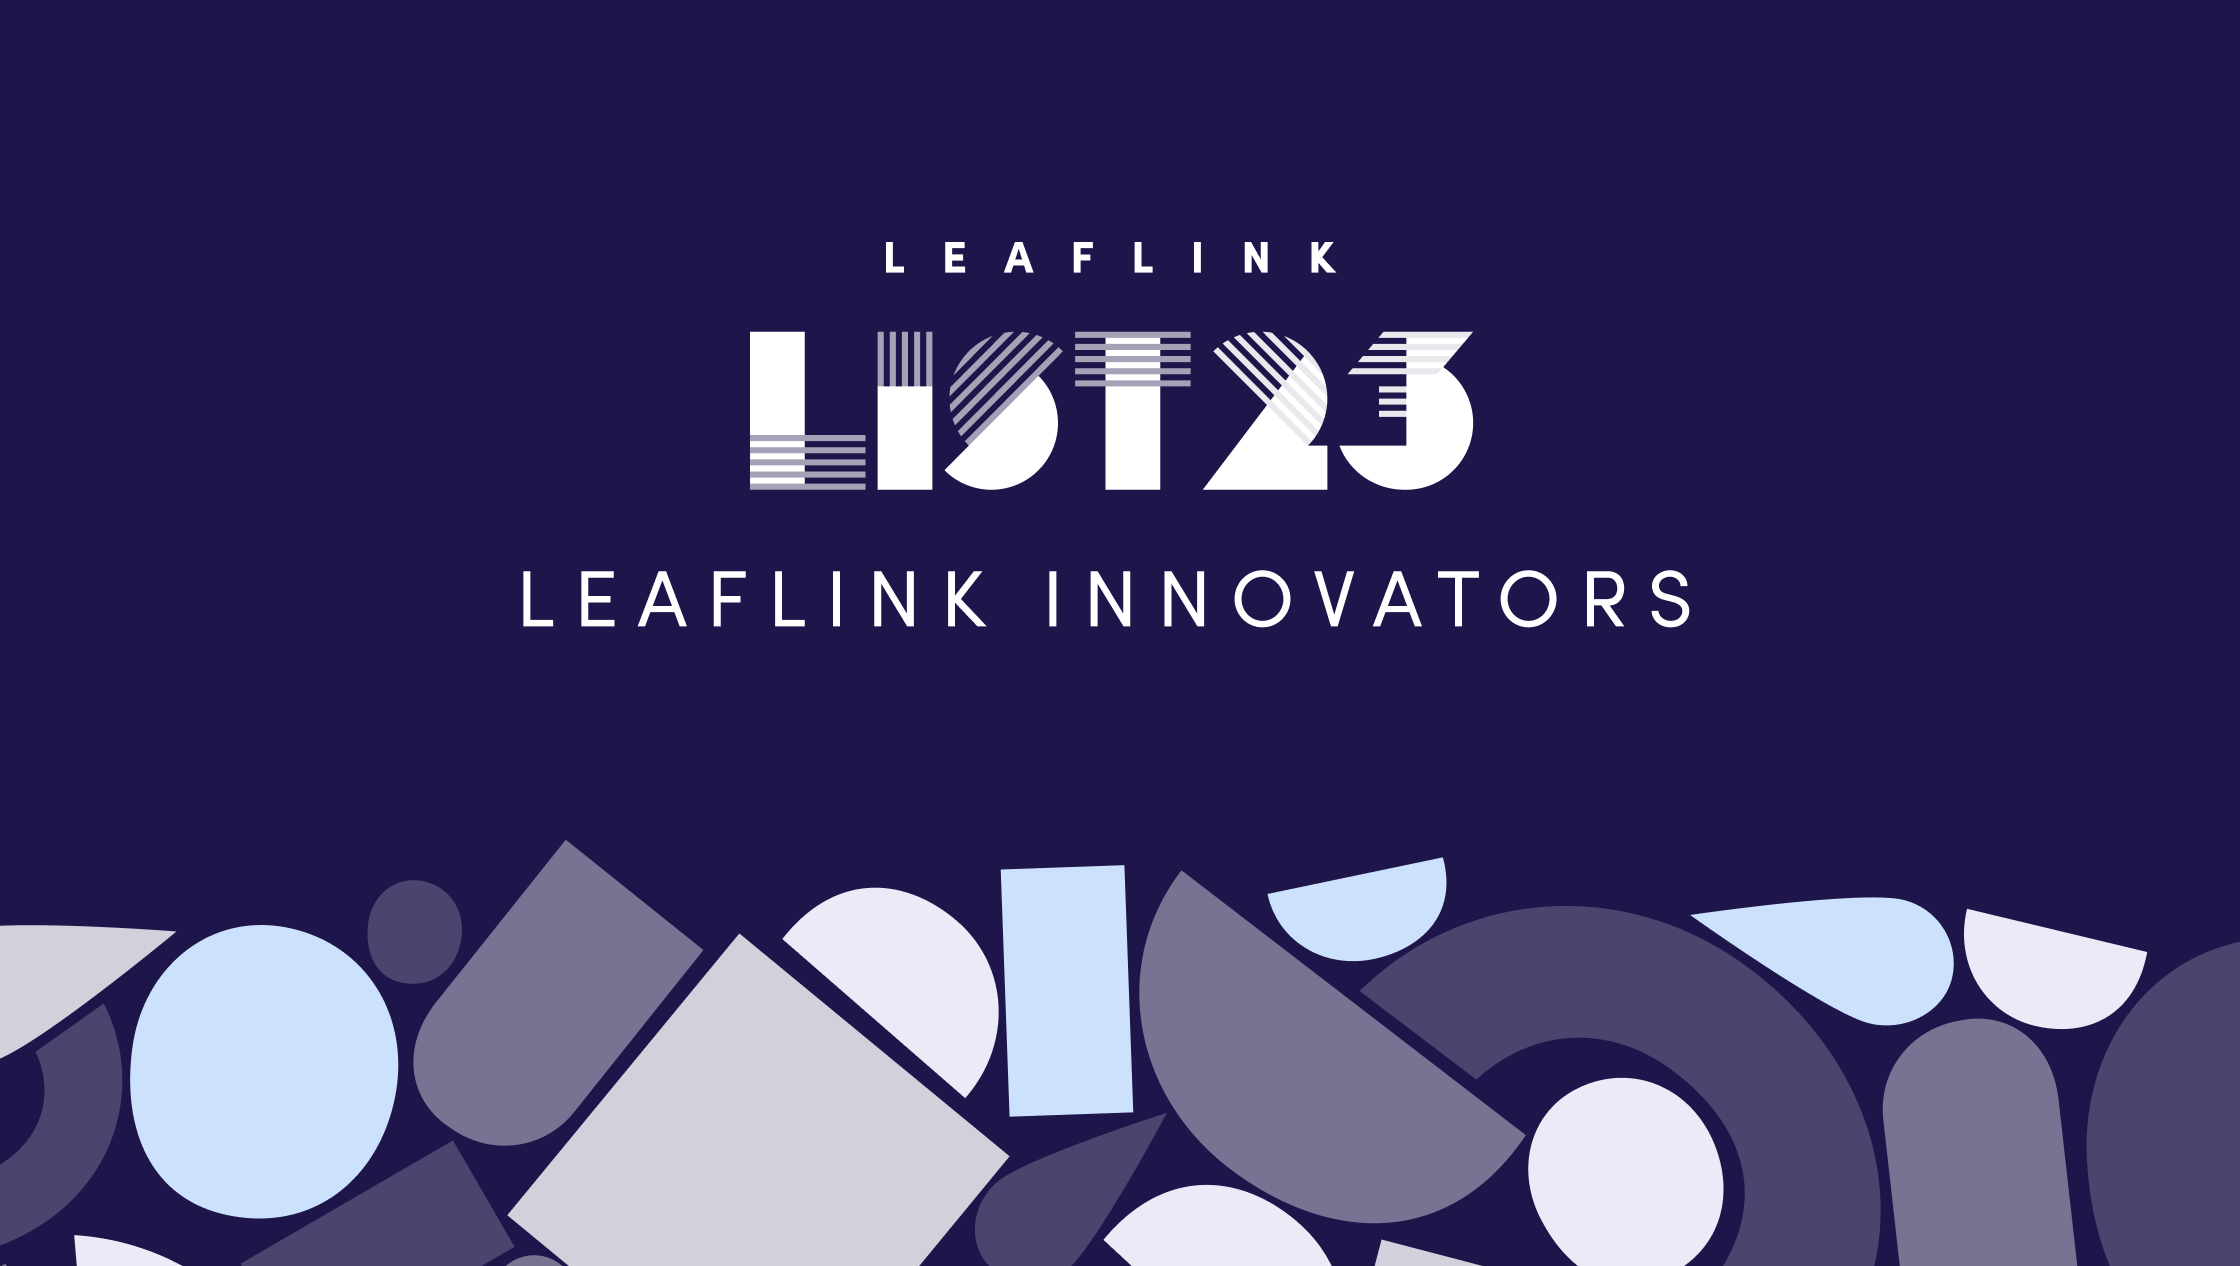 LeafLink List 2023: Innovators